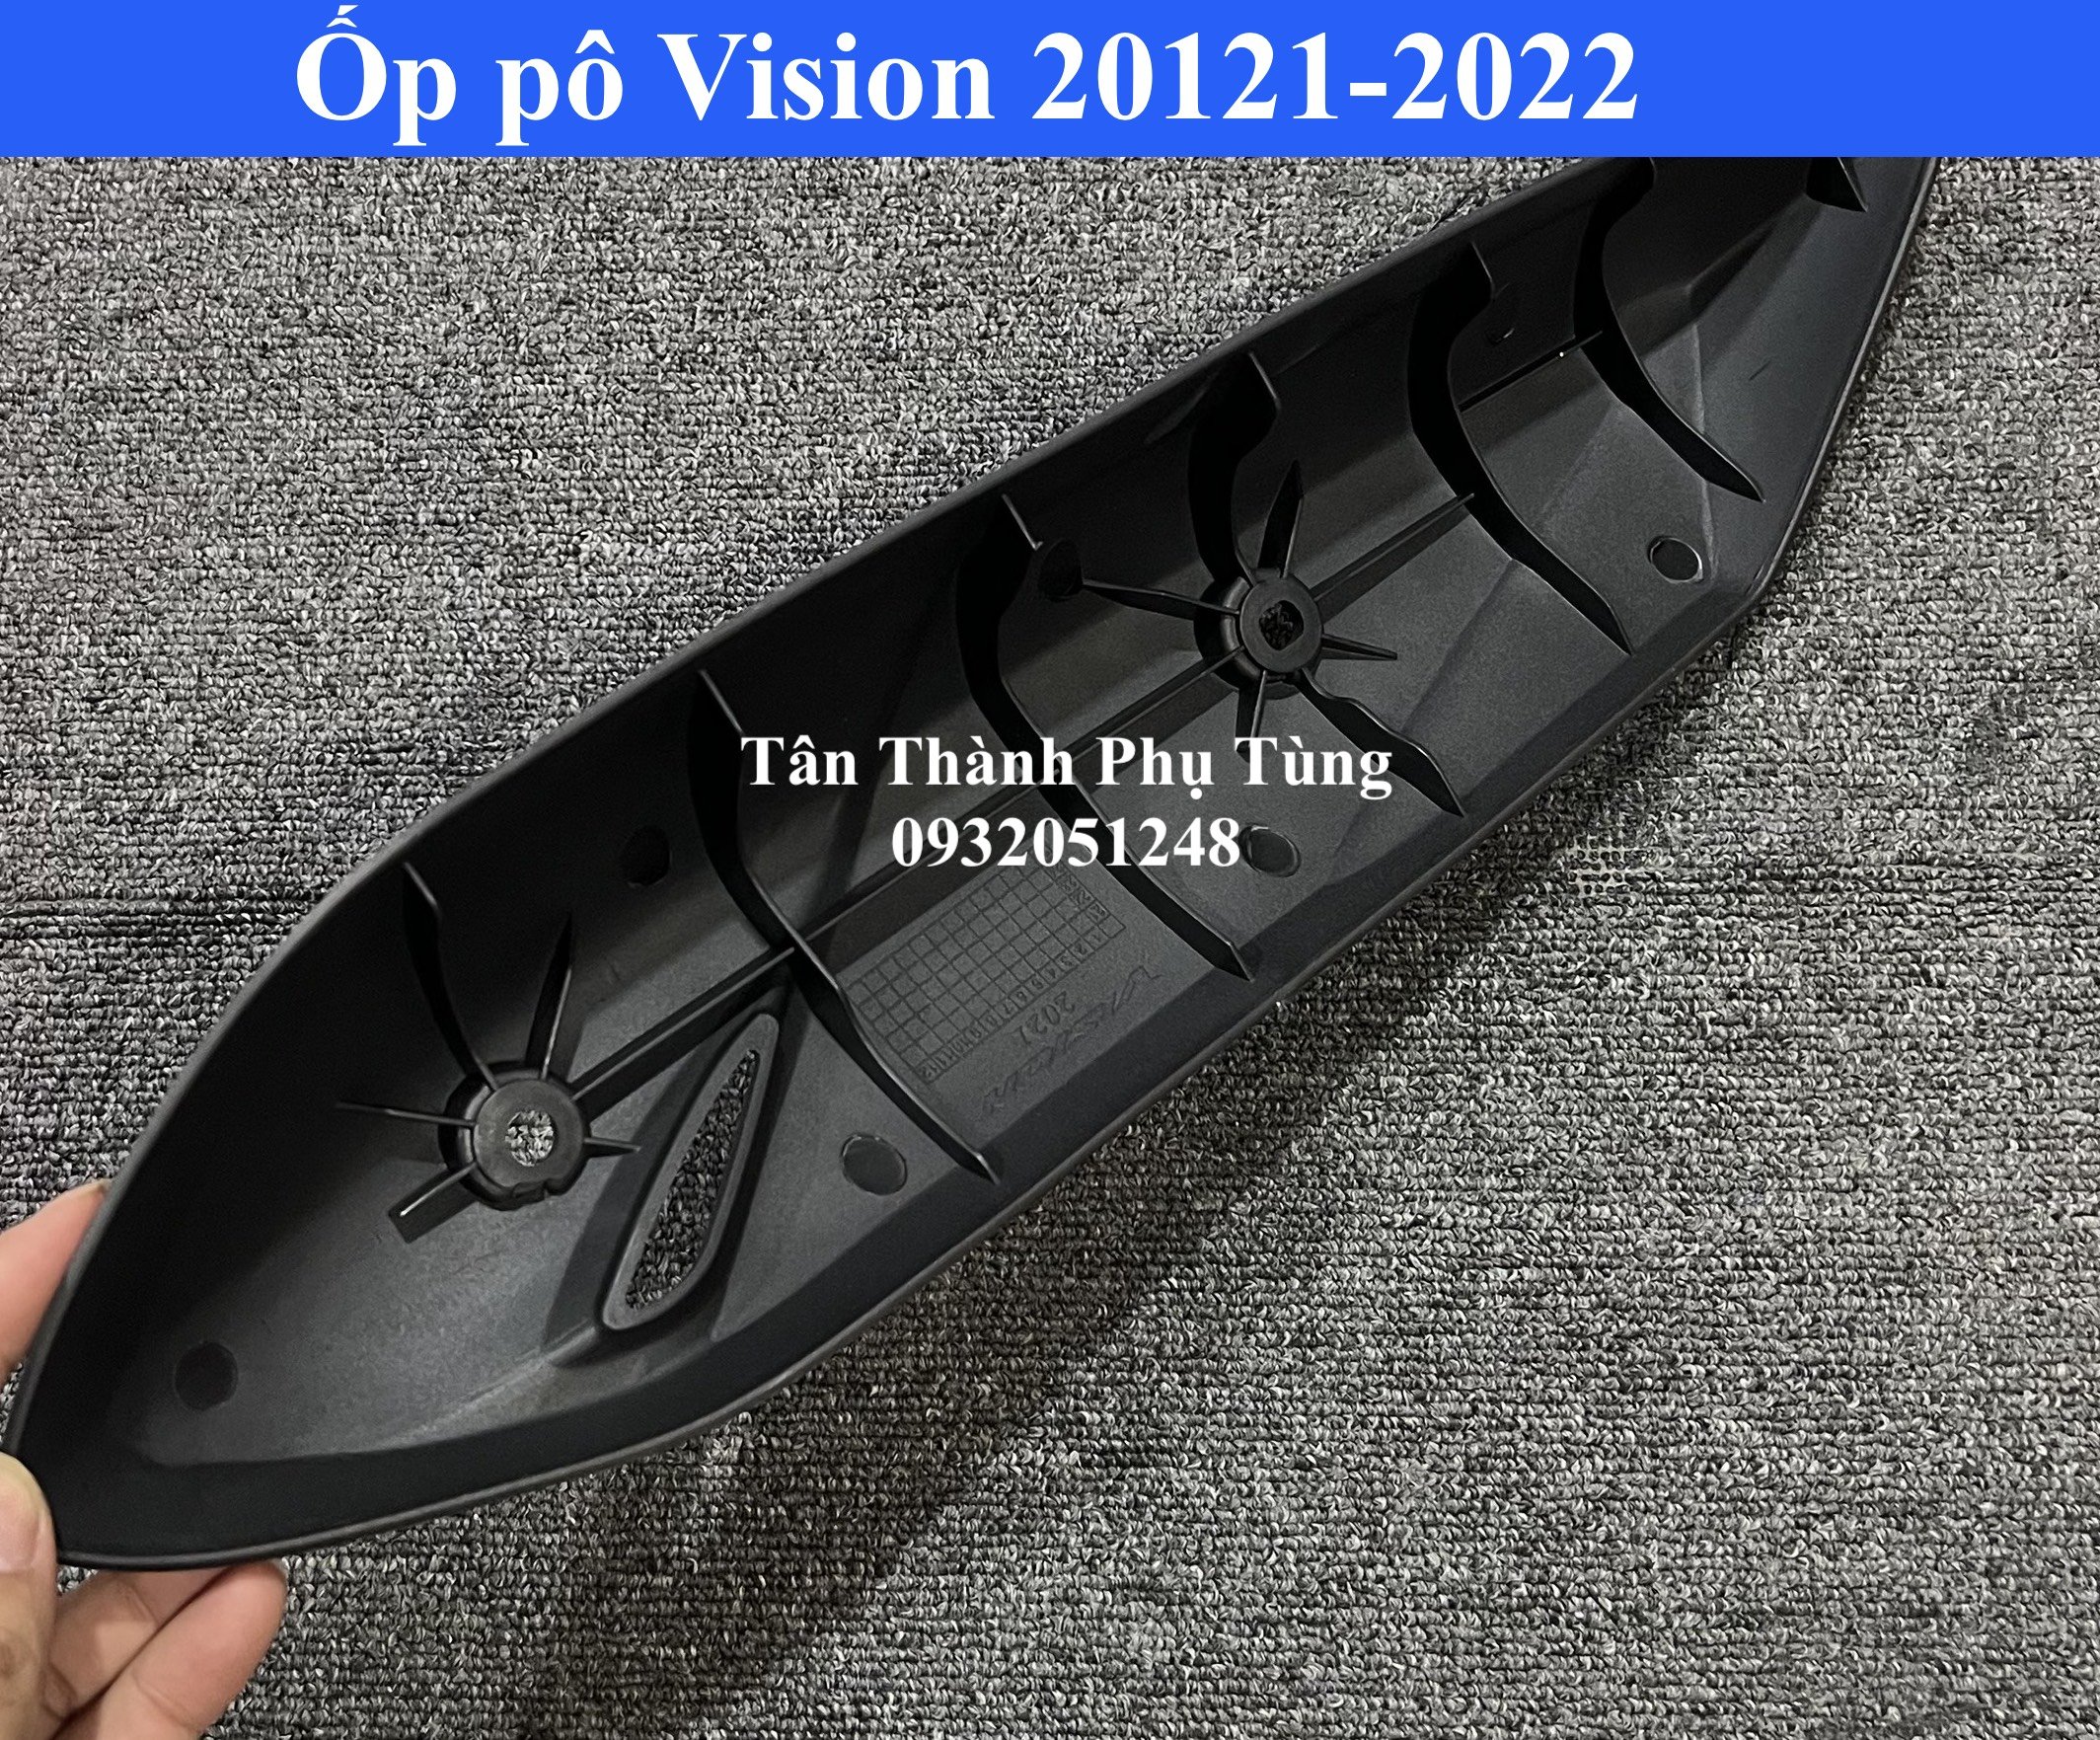 Ốp pô dành cho Vision 2021-2022 nhựa đen